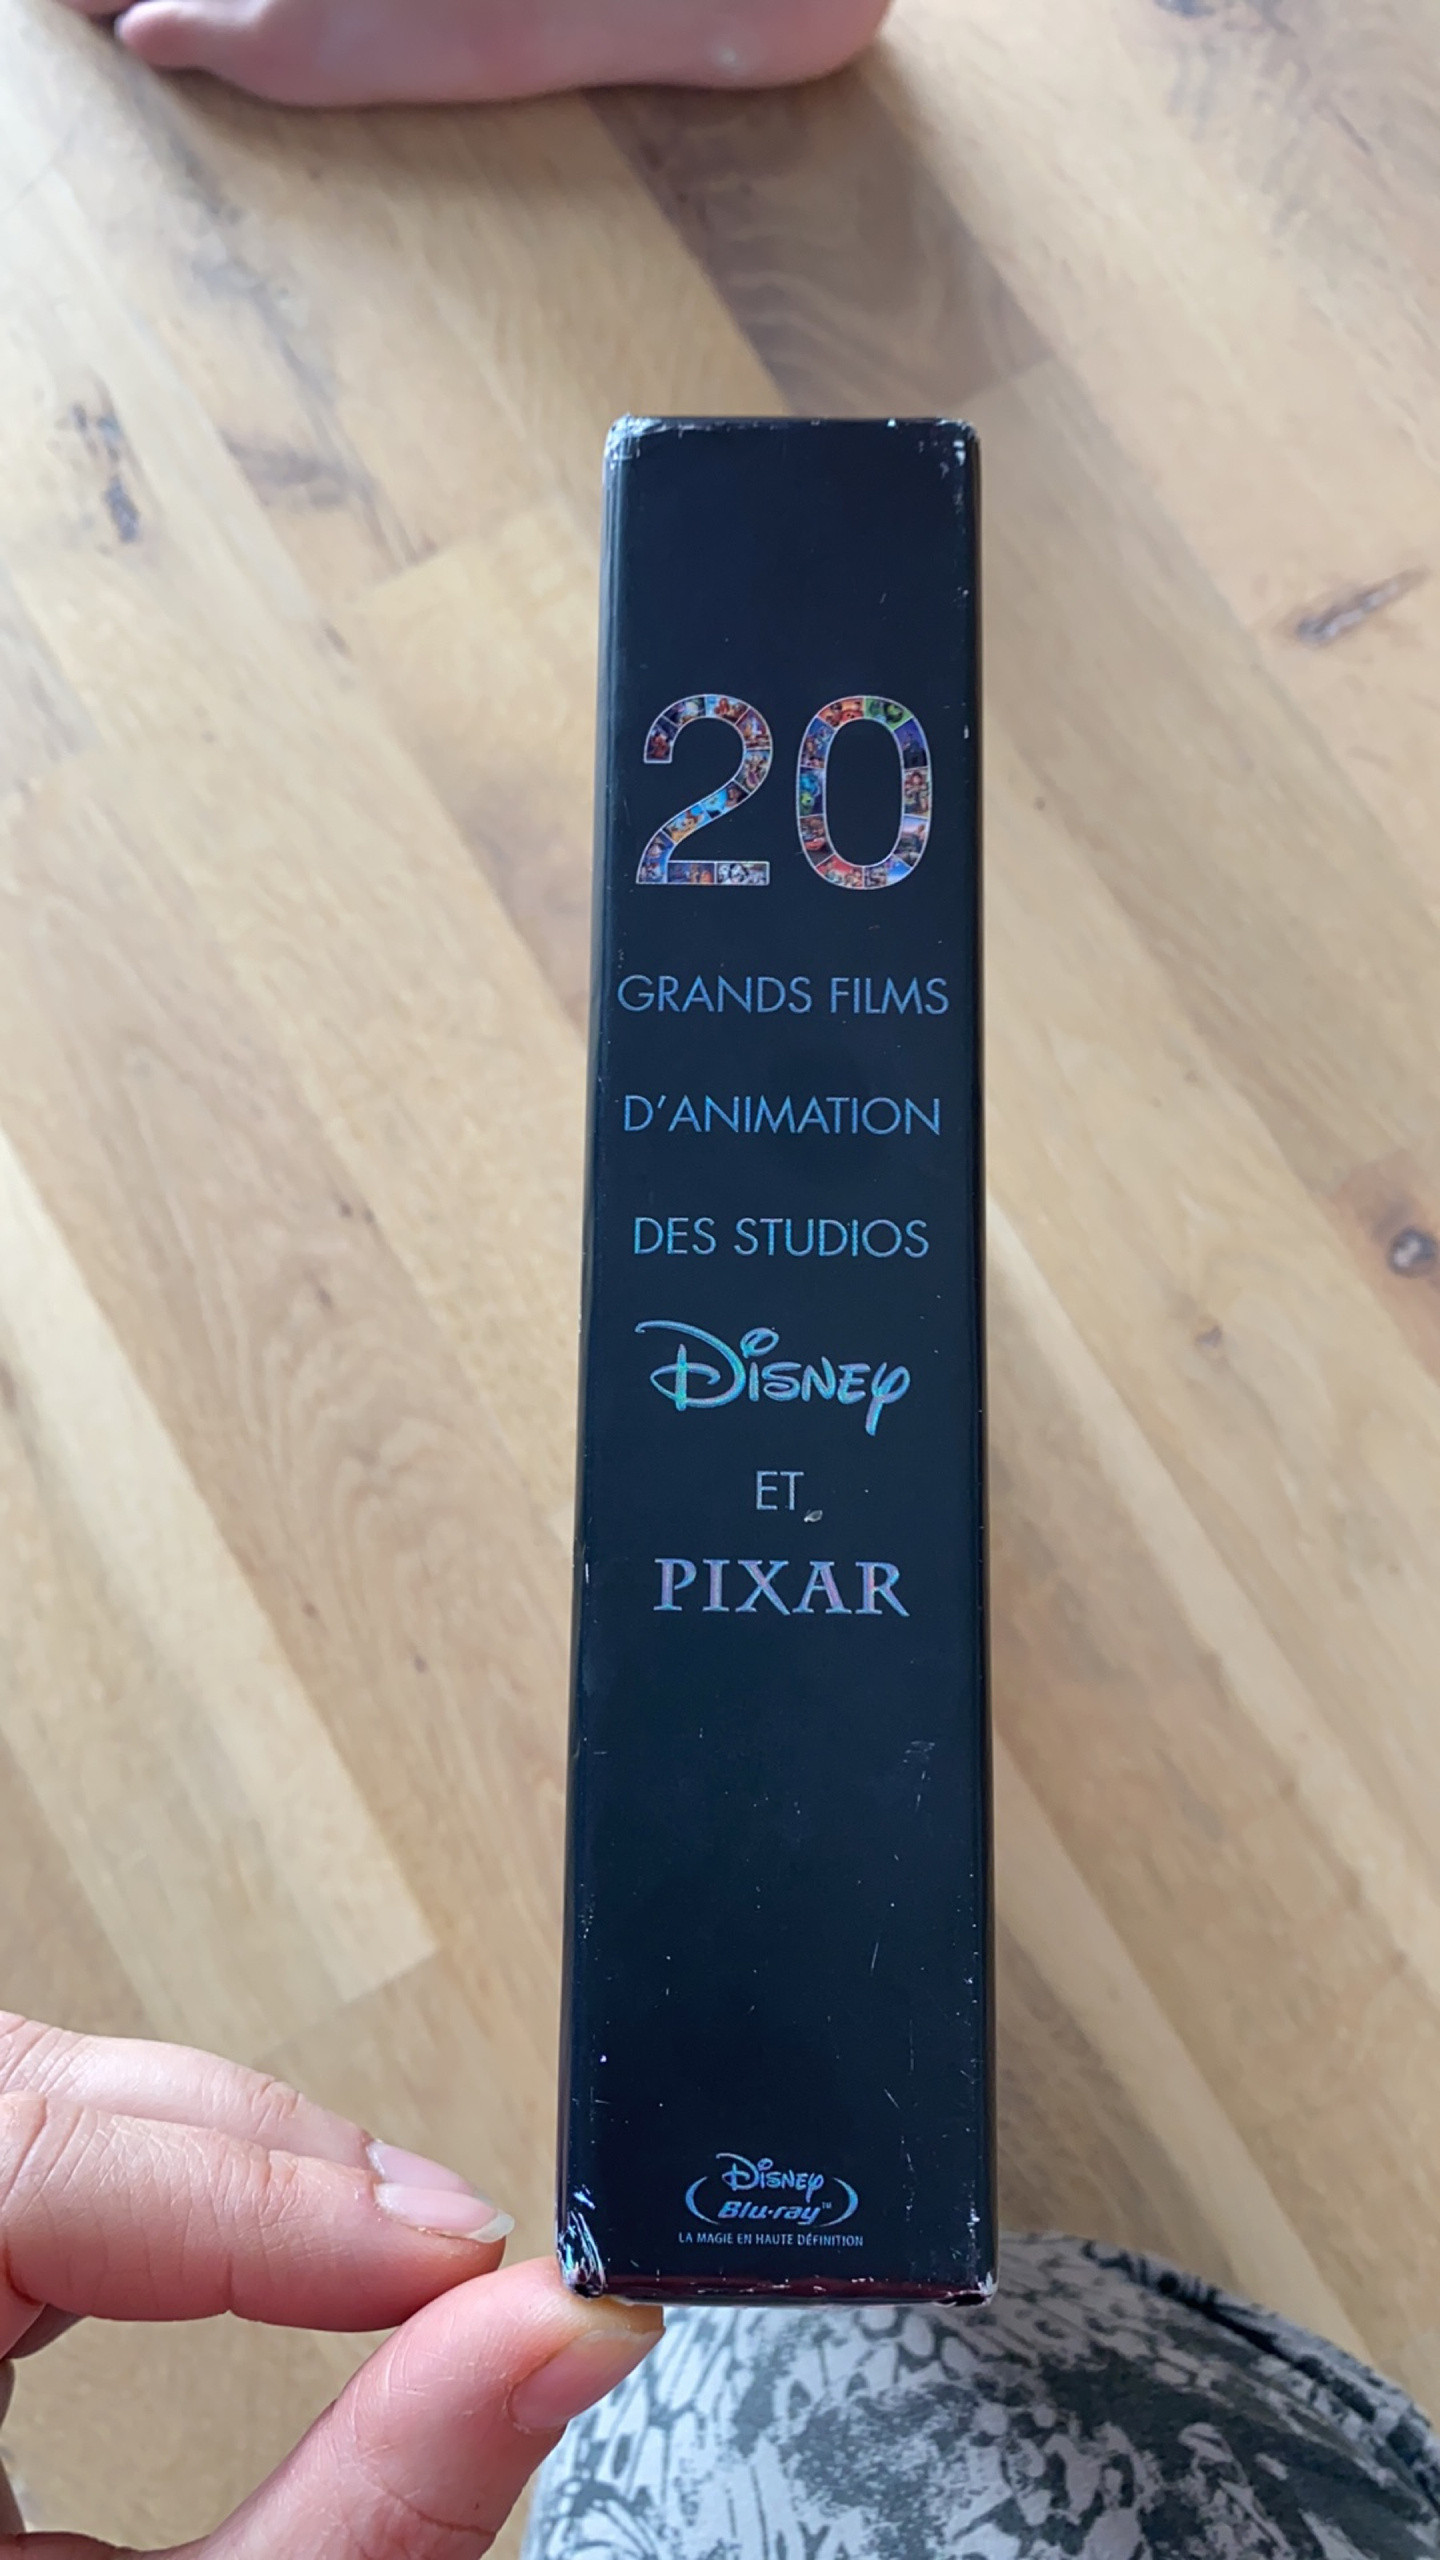  Coffret Disney-Pixar 20 films dont Wall-e, Alice au Pays des  merveilles, Bambi, Fantasia, Les 101 dalmatiens, Les Aristochats, La Belle  et le clochard [Blu-ray]: DVD et Blu-ray: Disney